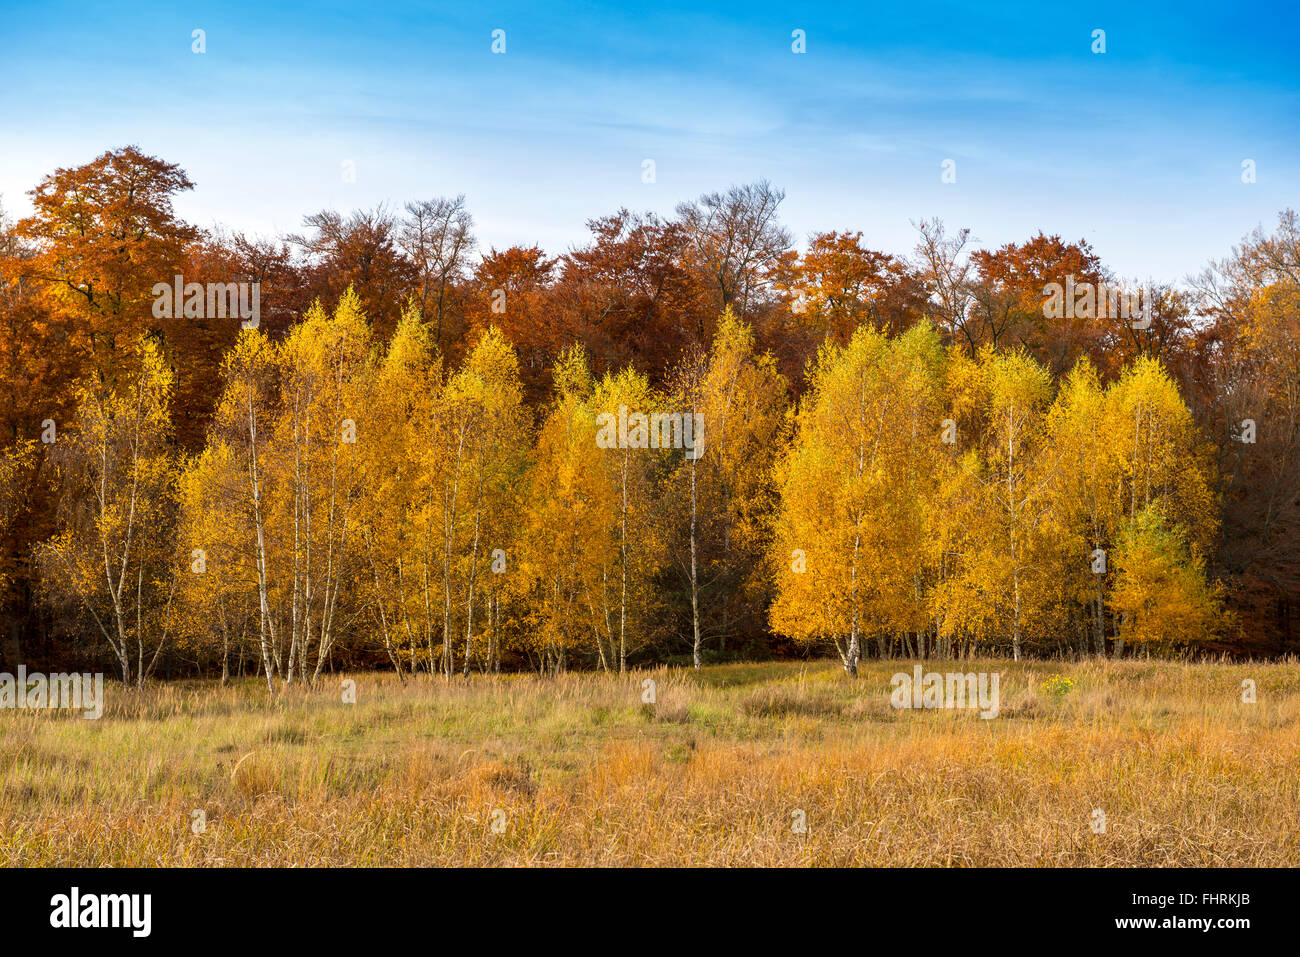 Gruppe von jungen Birken im Herbst Farben, Mönchbruch Wald, Mörfelden-Walldorf, Hessen, Deutschland Stockfoto